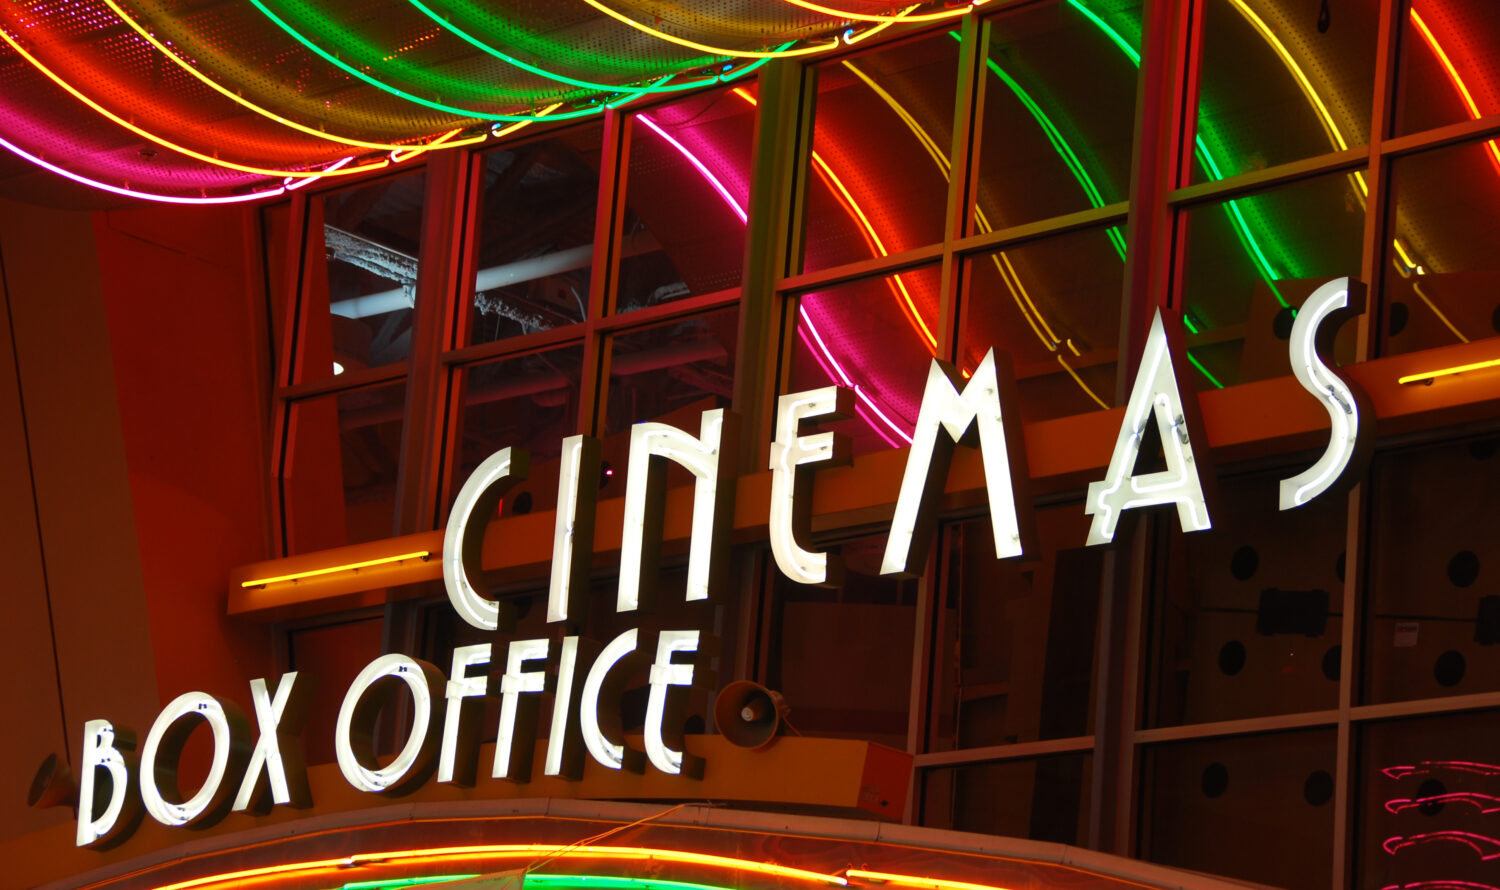 LED signage saying cinemas box office